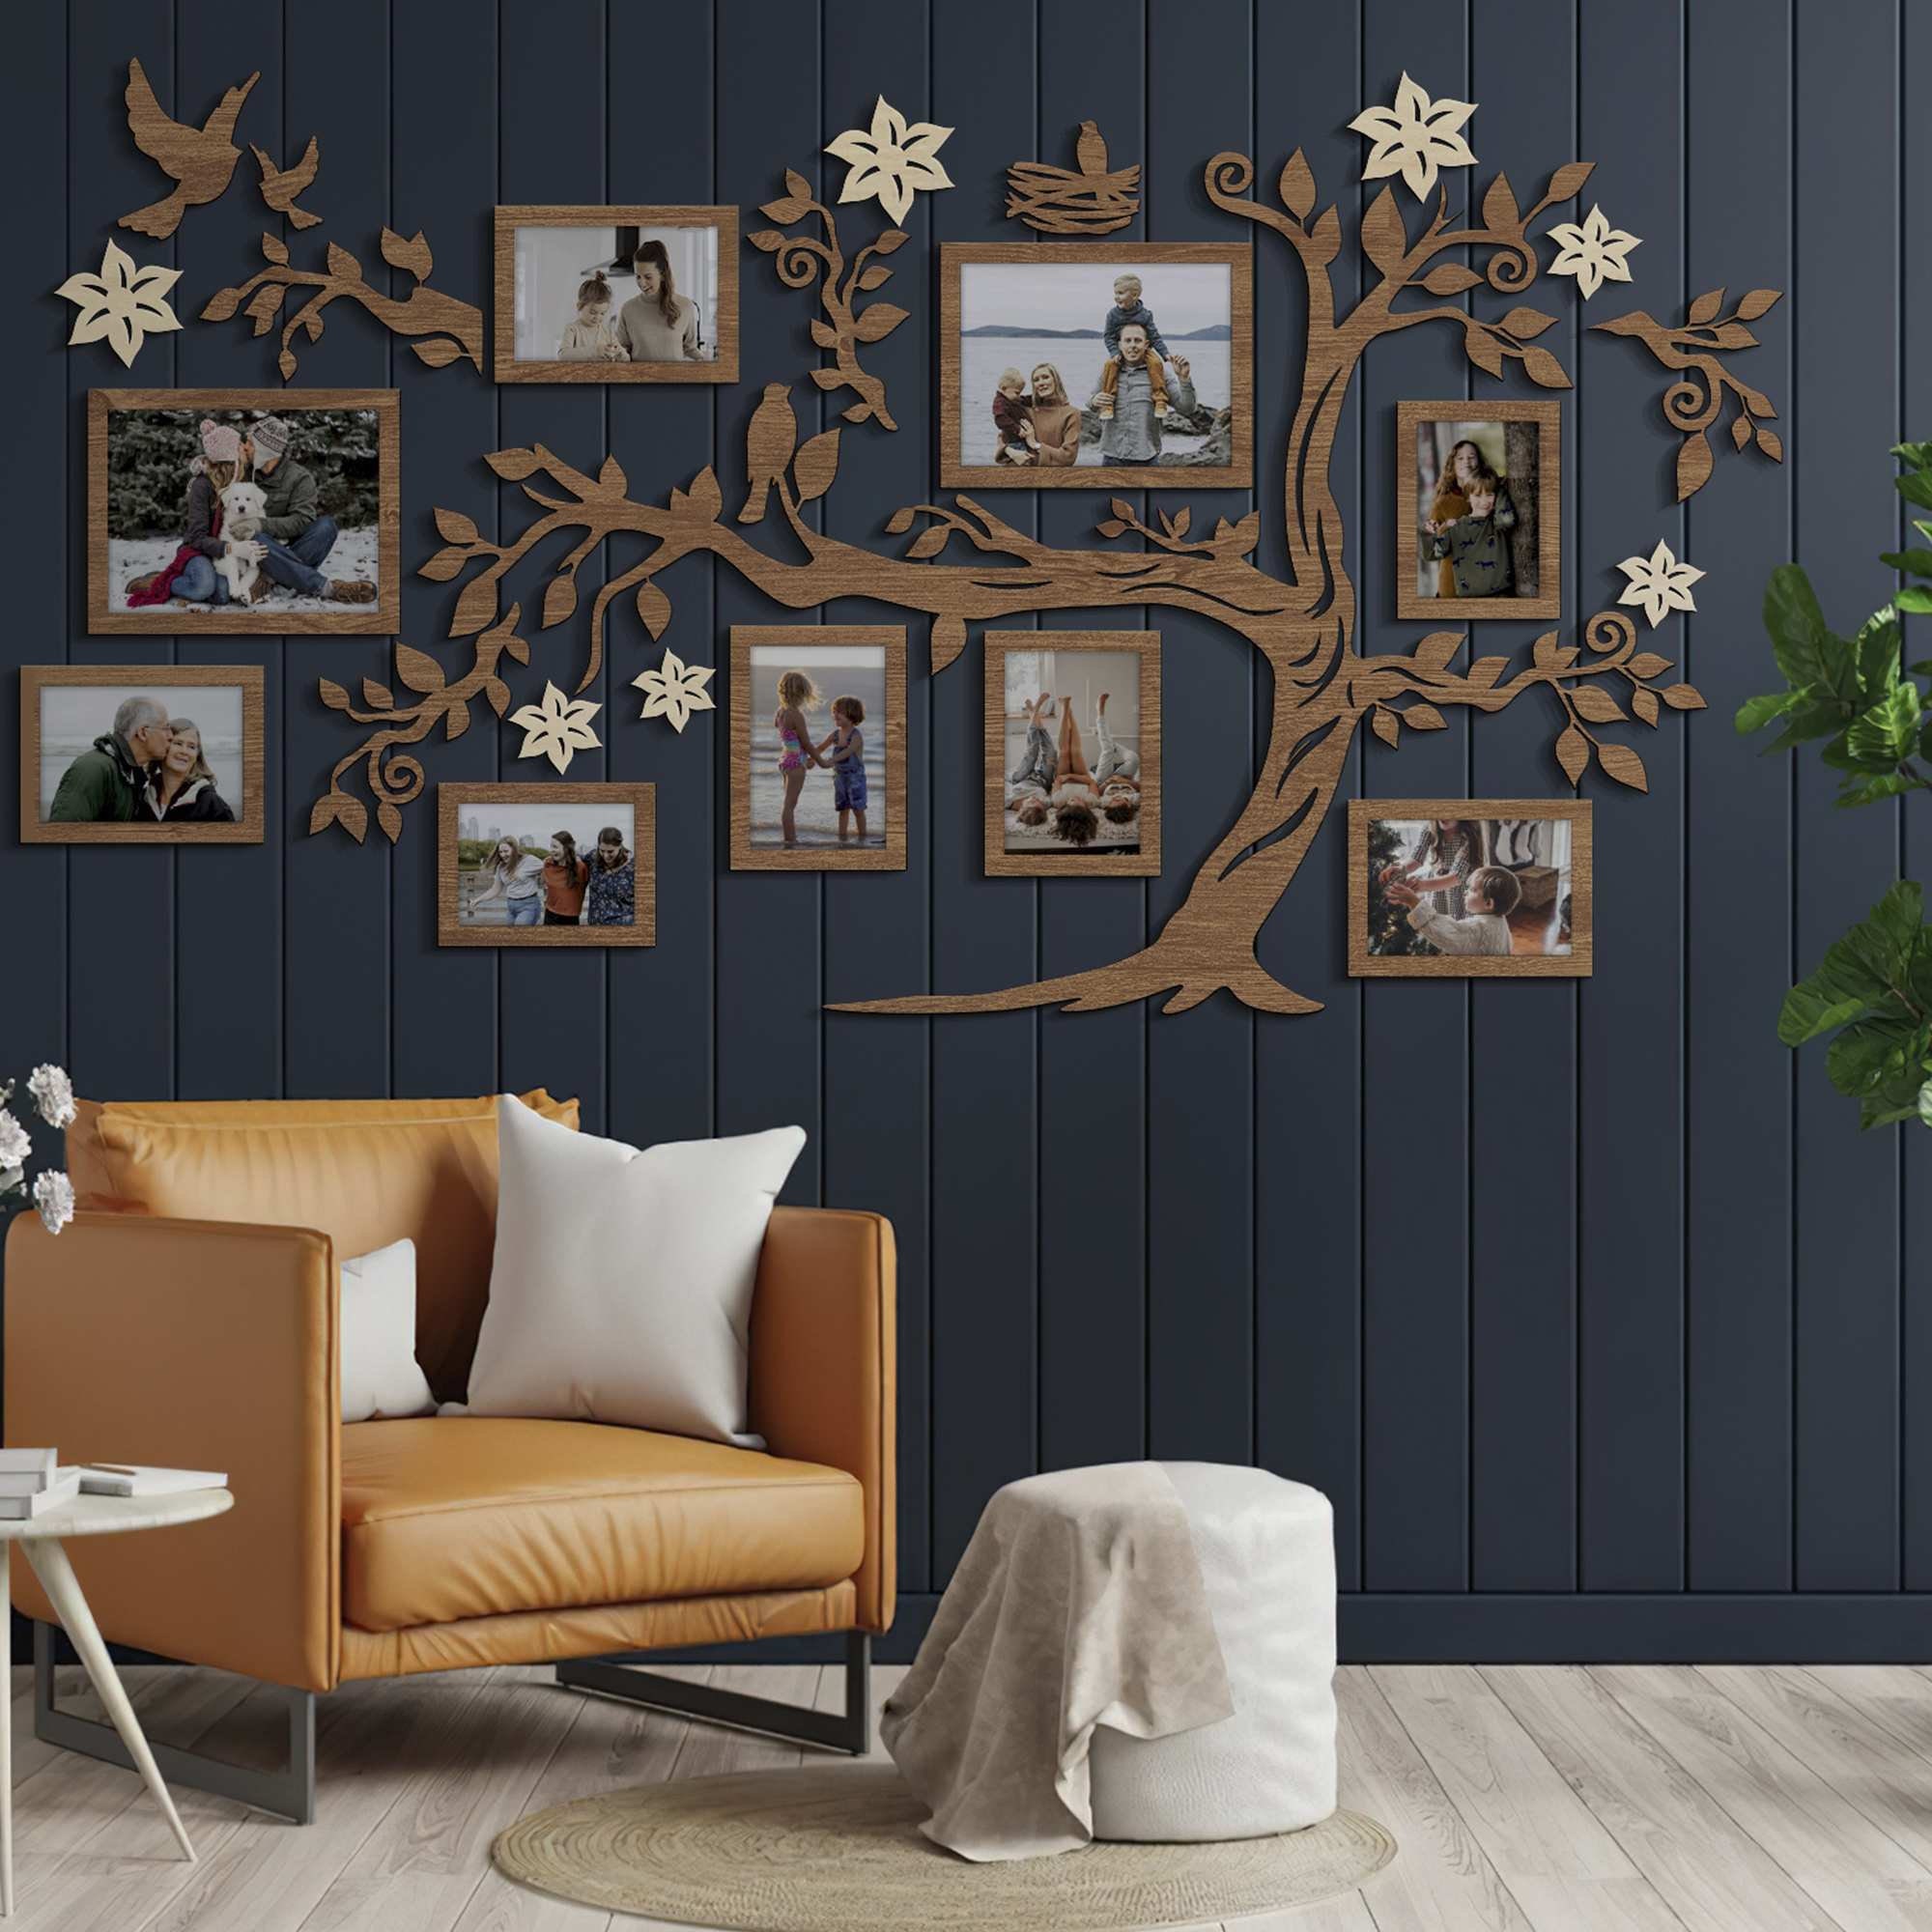 Frame Collage / Family Photo Frame / Wall Mount Decor / Wedding Family Tree